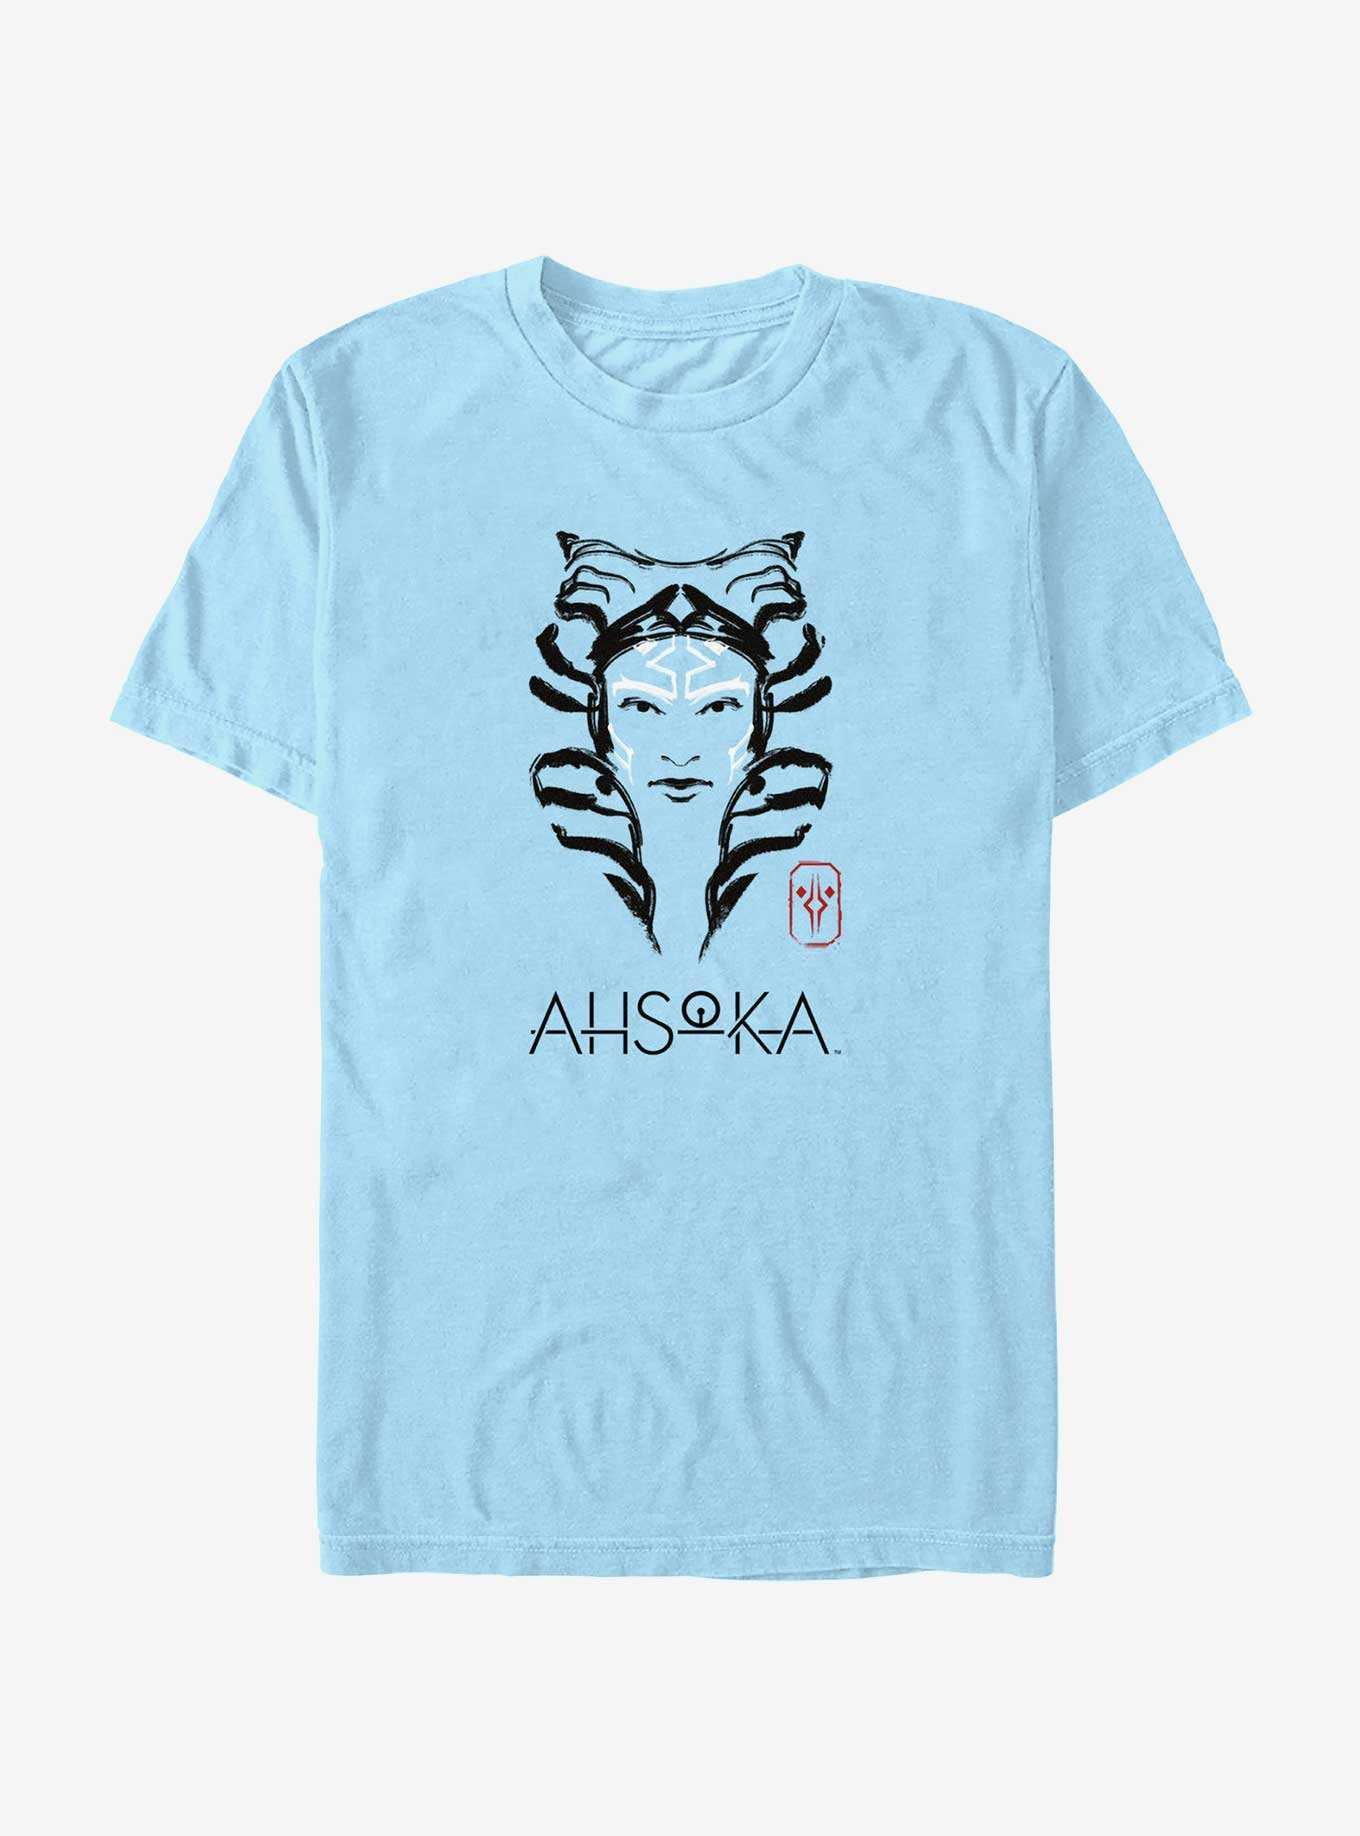 Star Wars Ahsoka Face Portrait T-Shirt, , hi-res